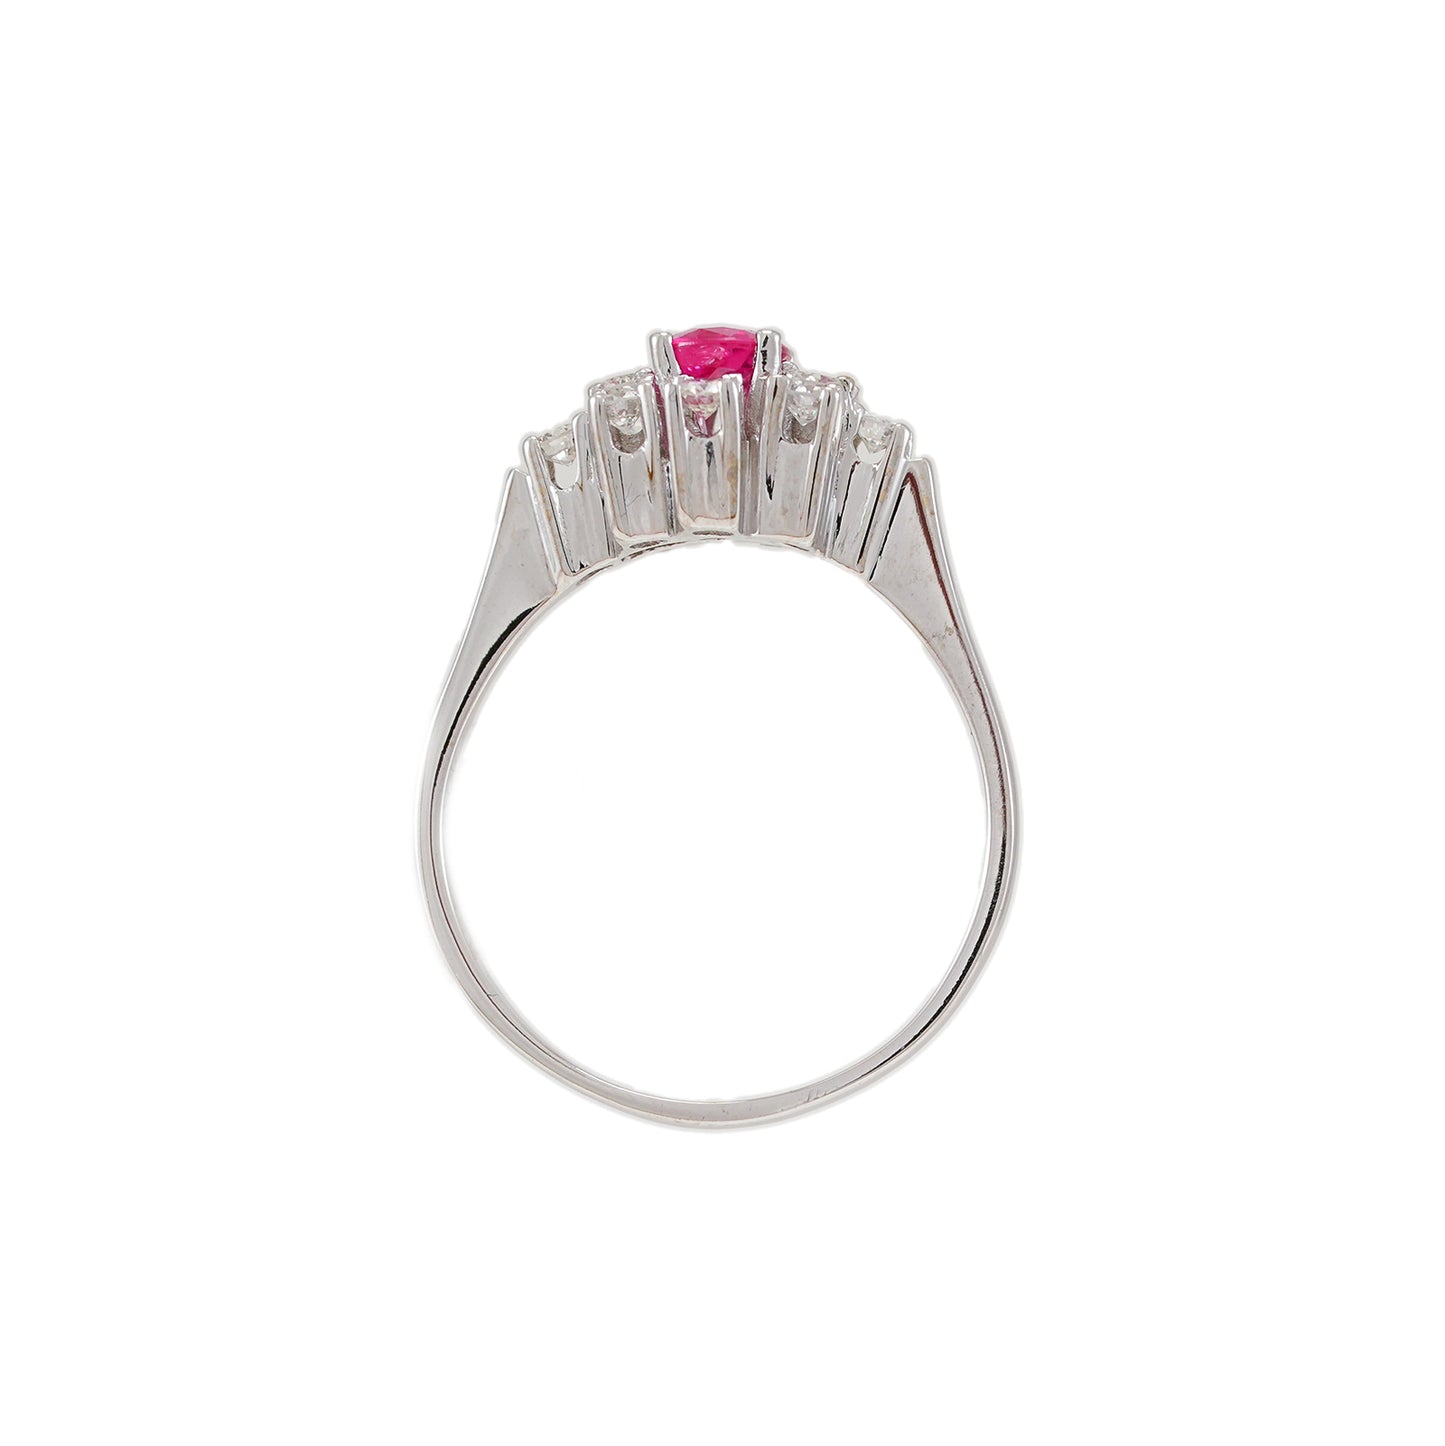 Vintage Entourage Gemstone Ring Ruby Diamond White Gold 14K Women's Ring Gold Ring